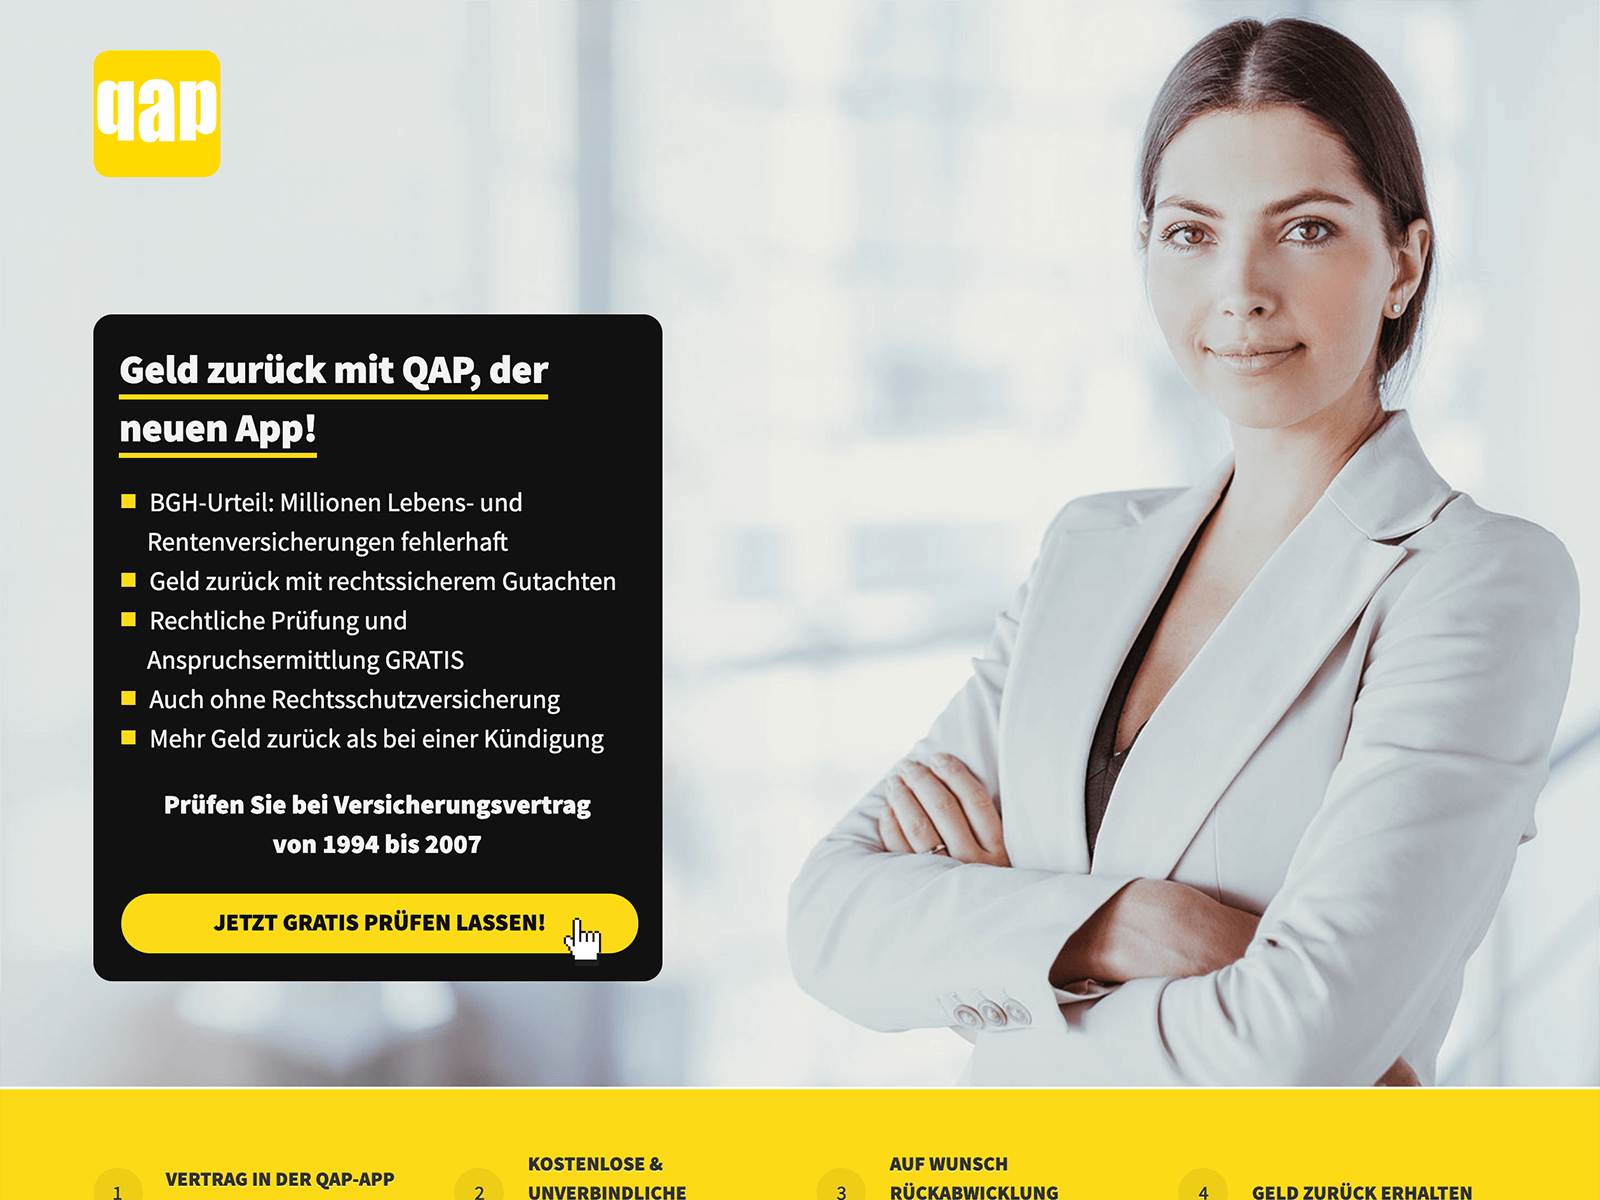 Web-App für Finanzprodukte - QAP die App